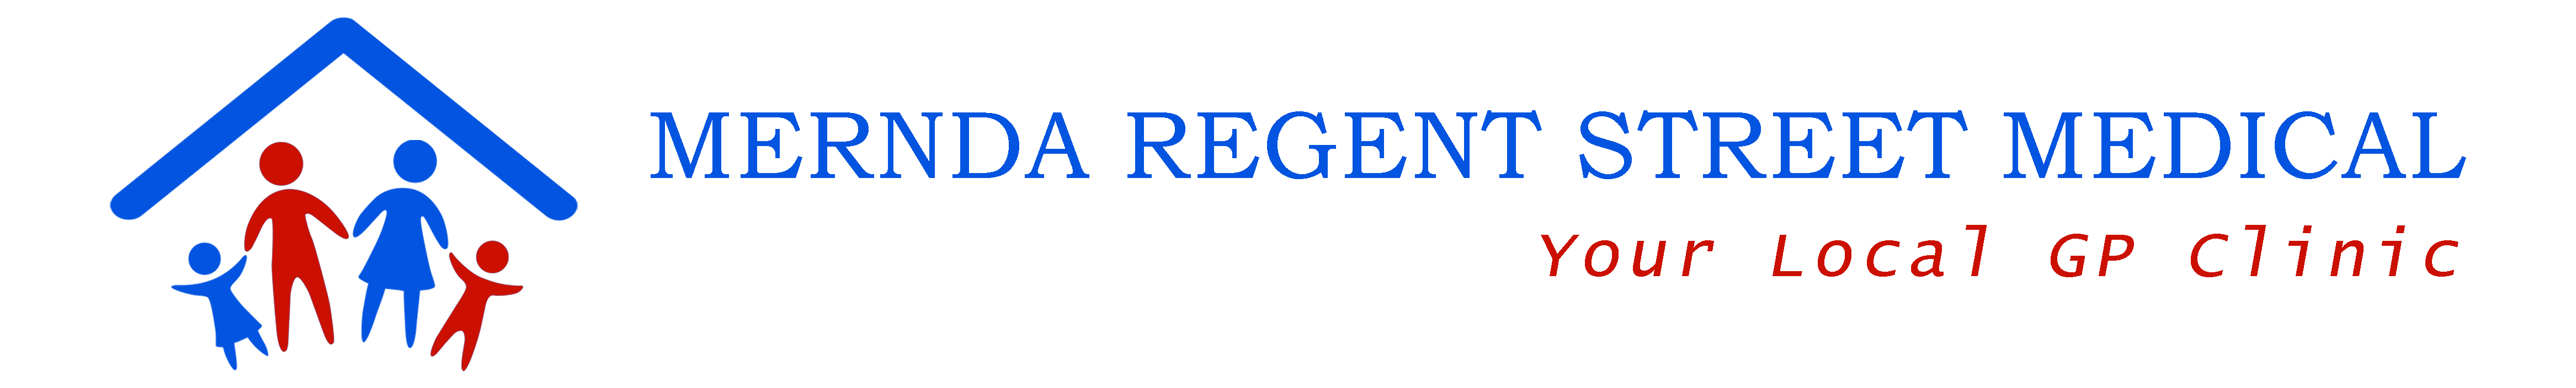 Mernda Regent Street Medical Logo